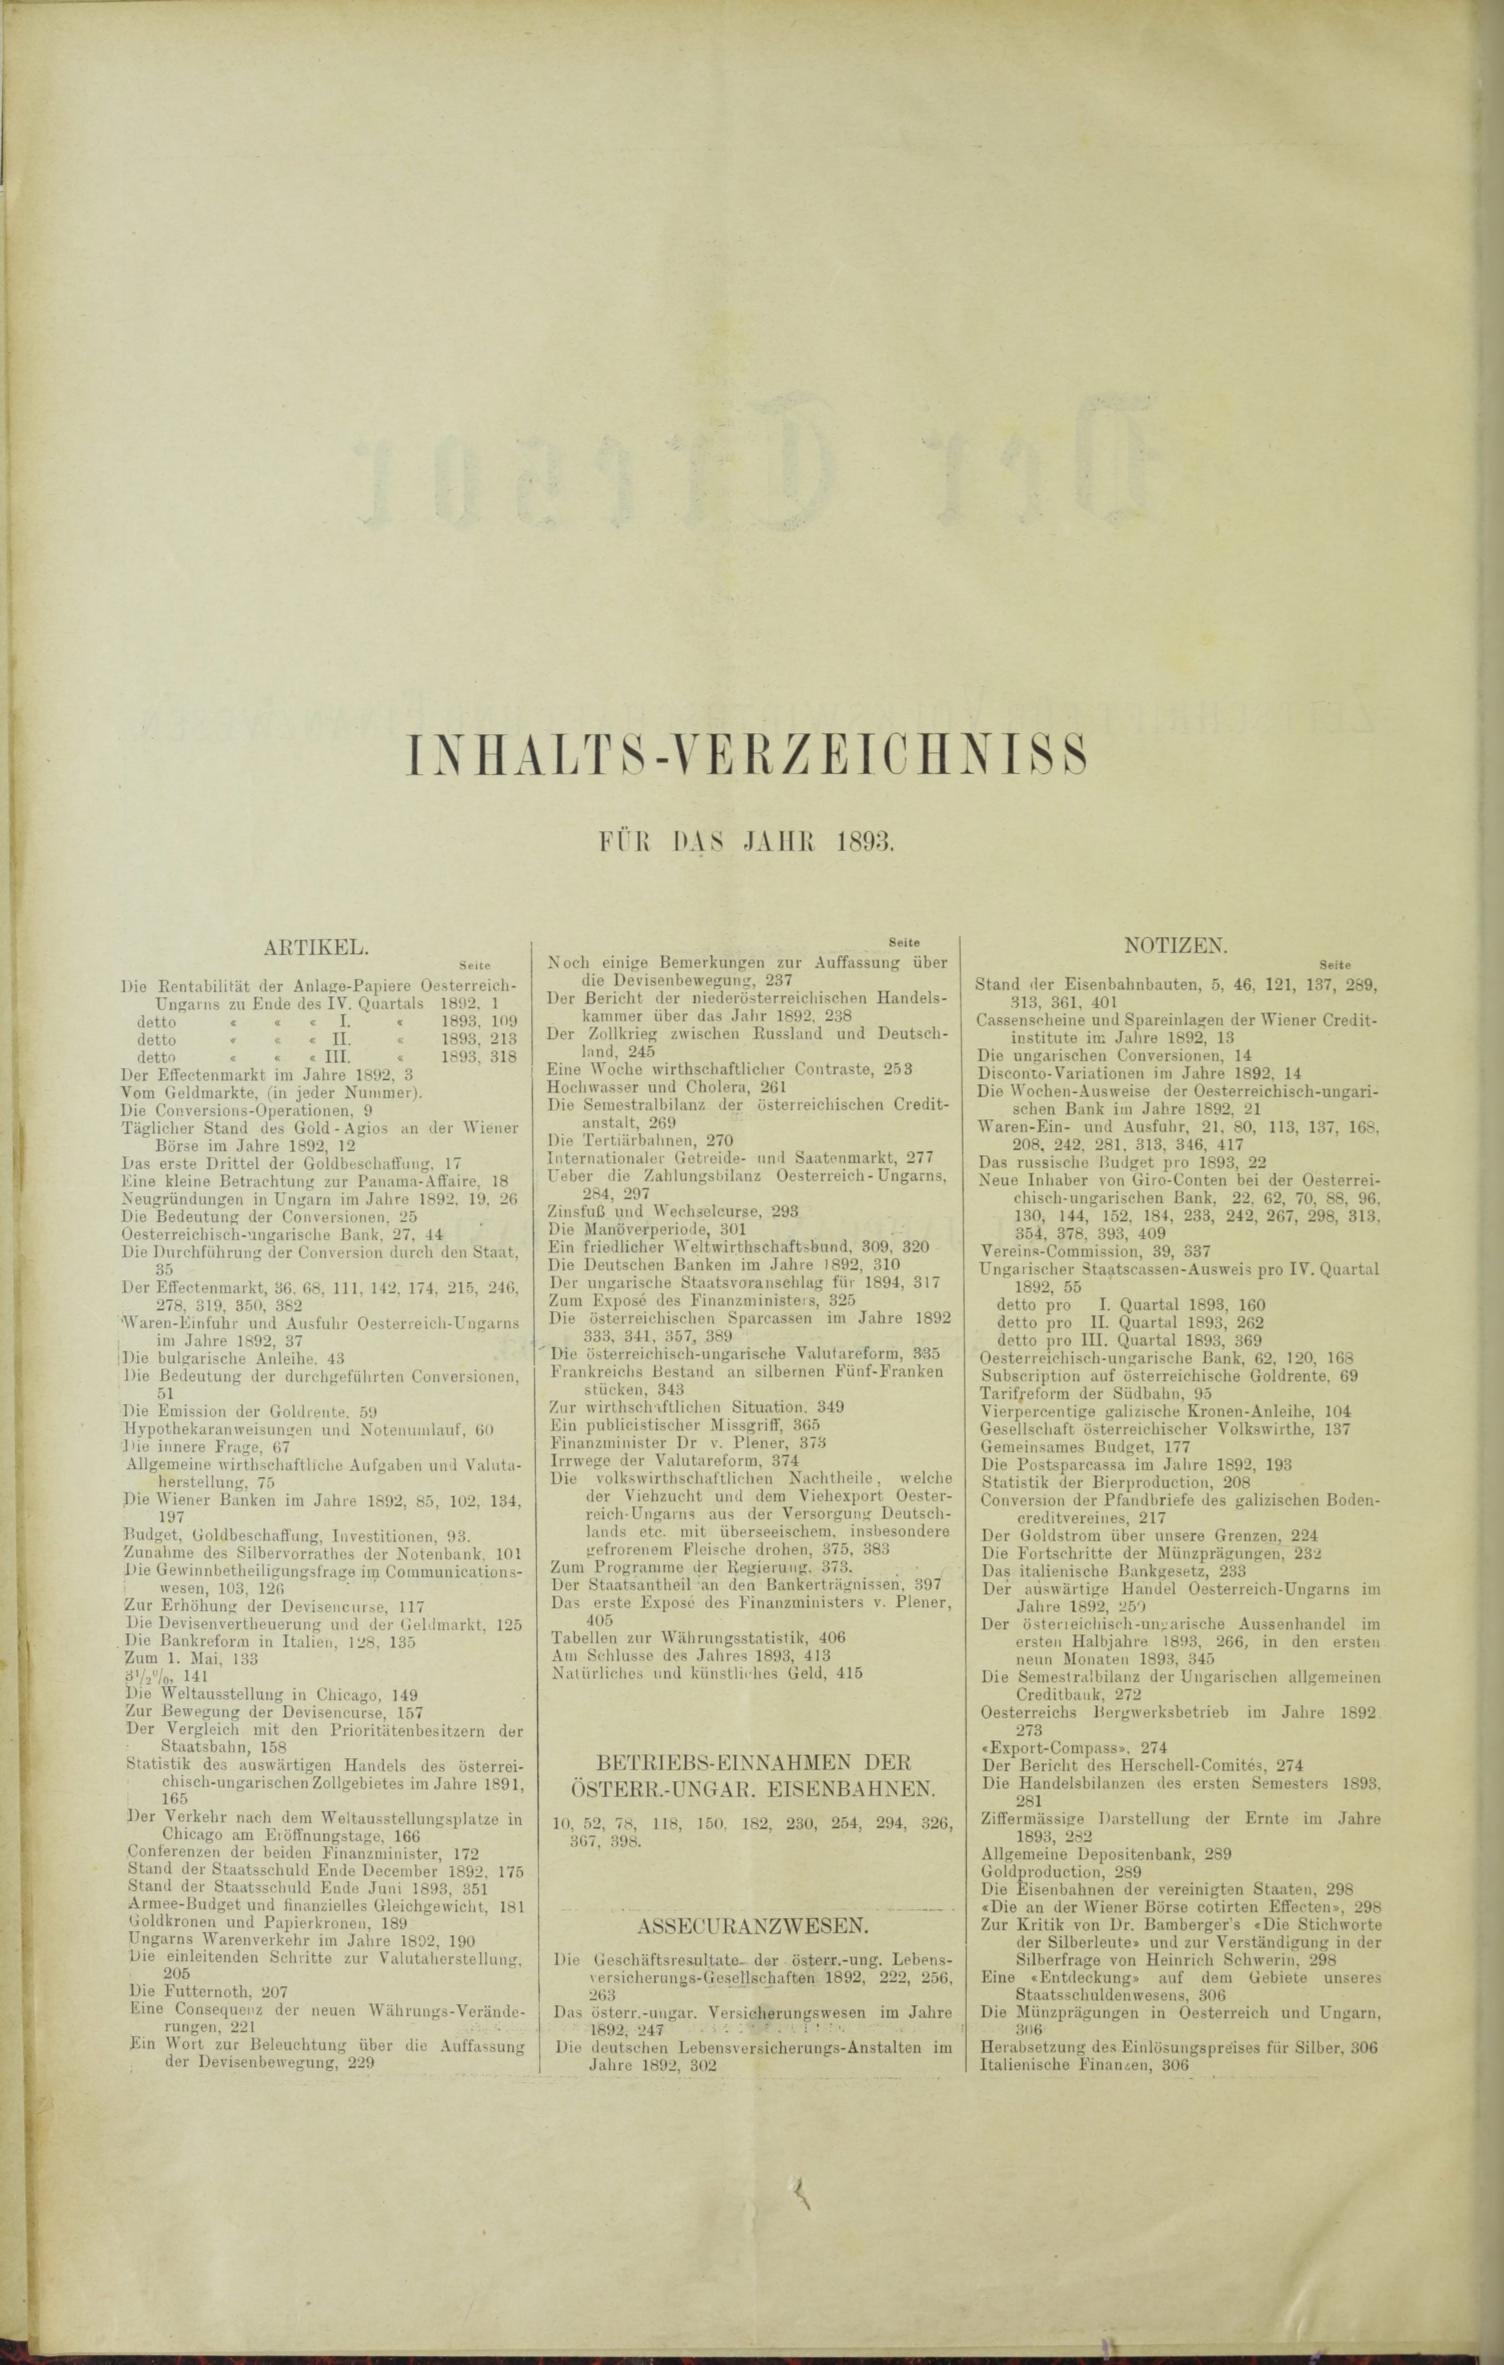 Der Tresor 18.05.1893 - Seite 10